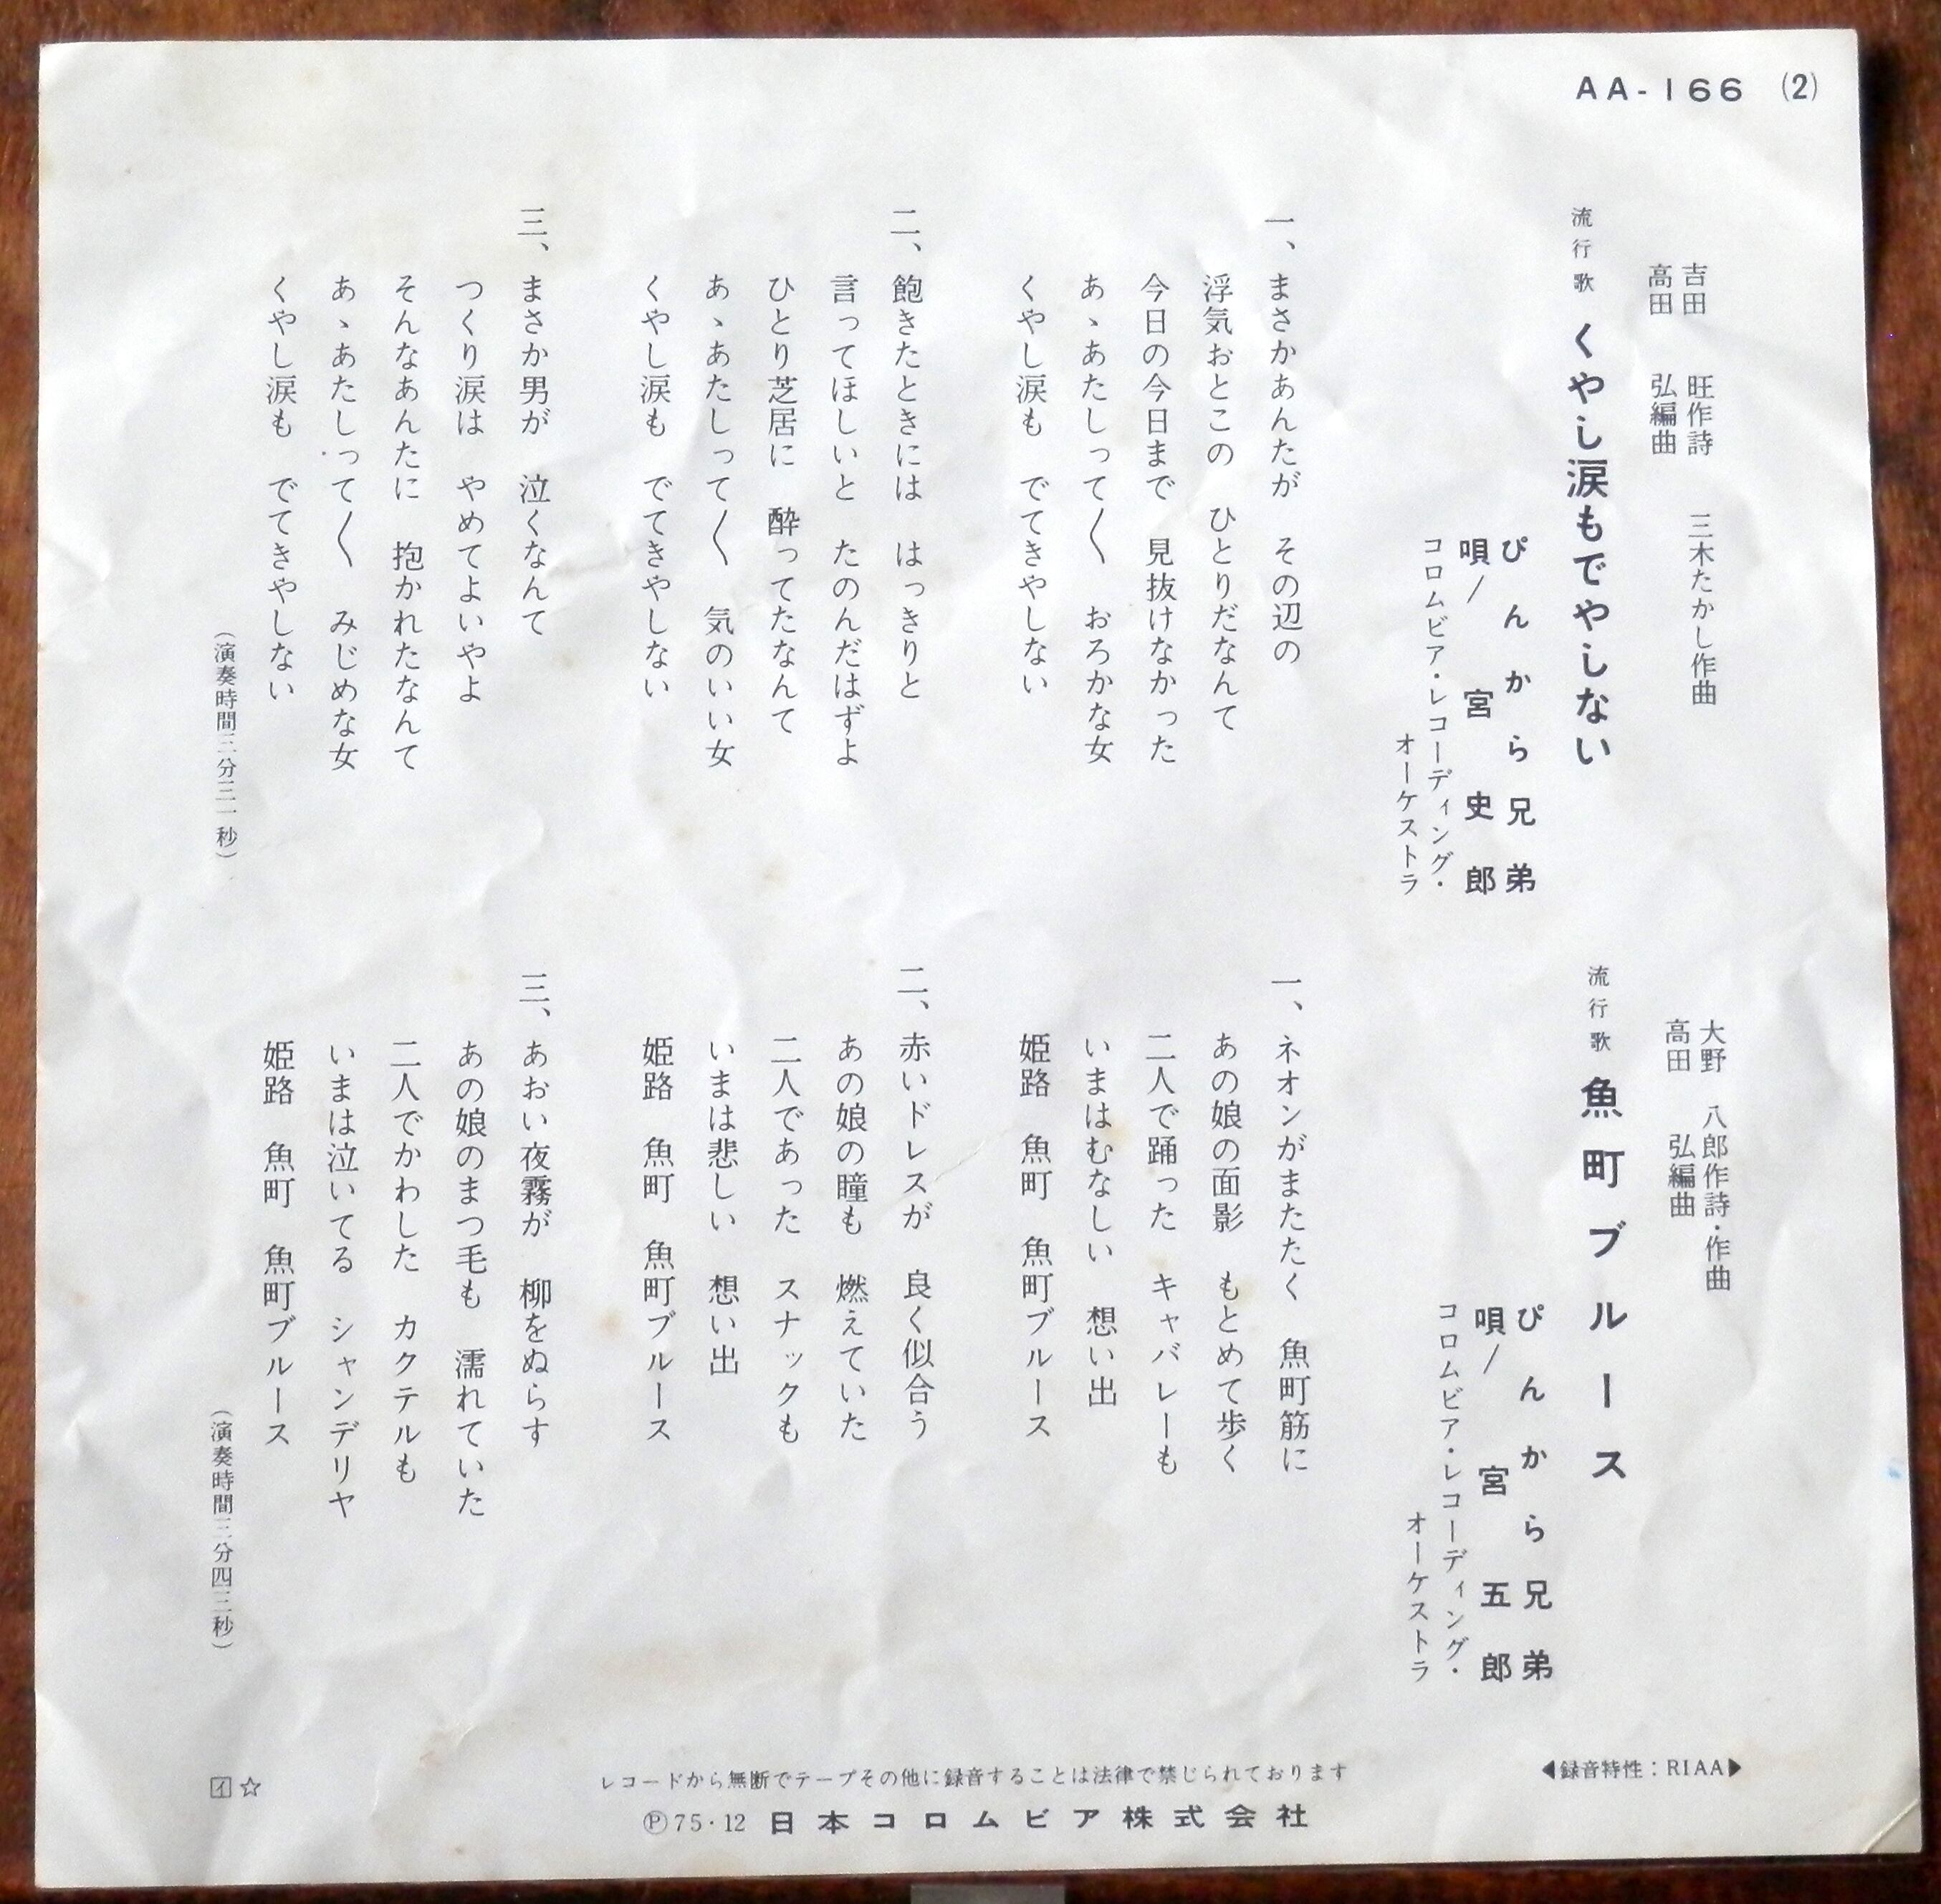 75【EP】ぴんから兄弟 くやし涙もでやしない 音盤窟レコード